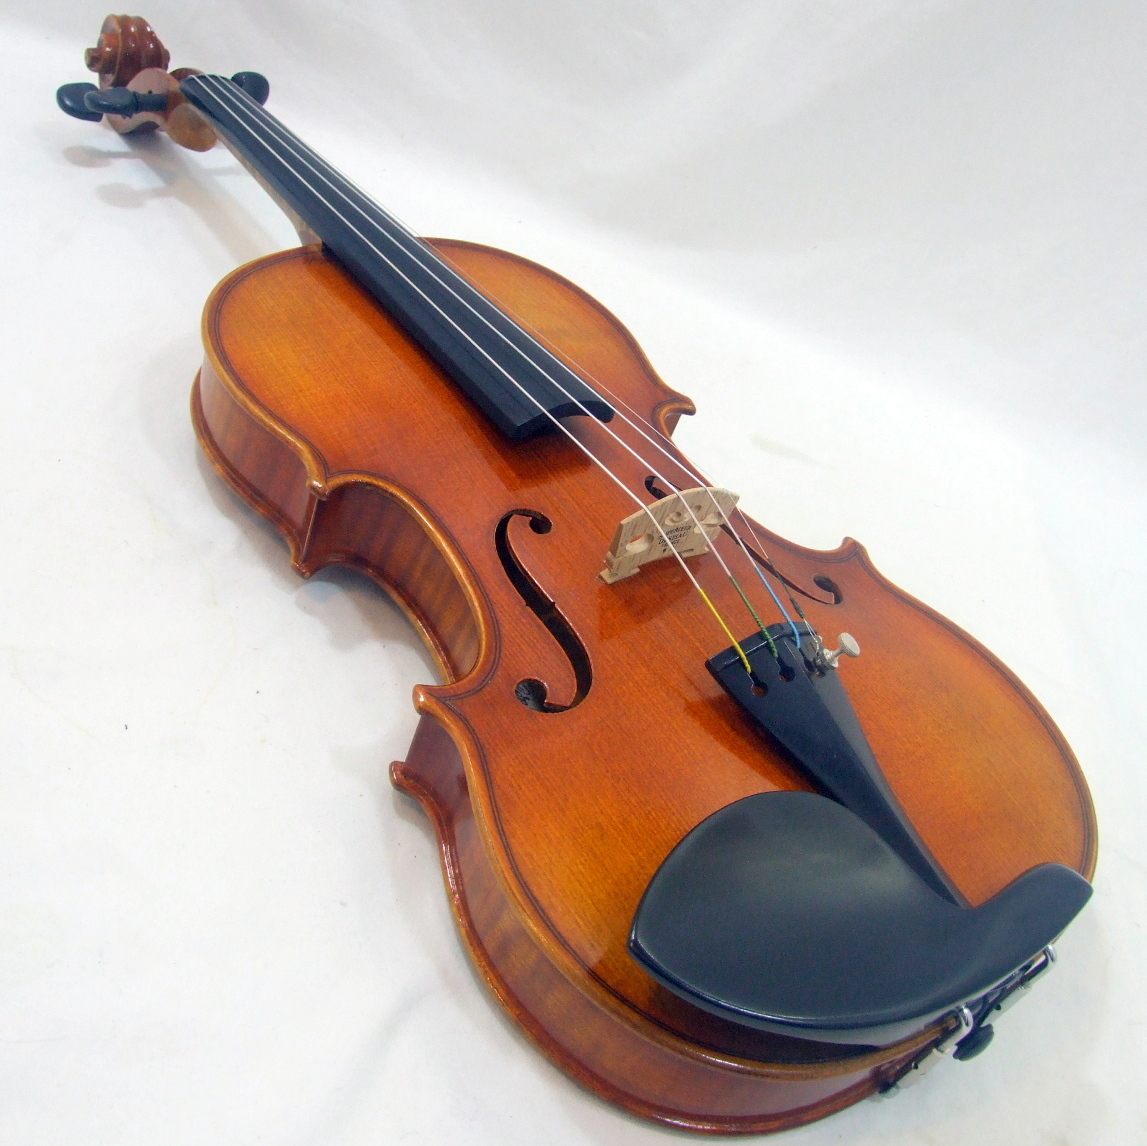 メンテ済み 美品 1991年 ドイツ製 カールヘフナー Karl Hofner Concert Violin KH200 Popl Otto作 4/4  虎杢